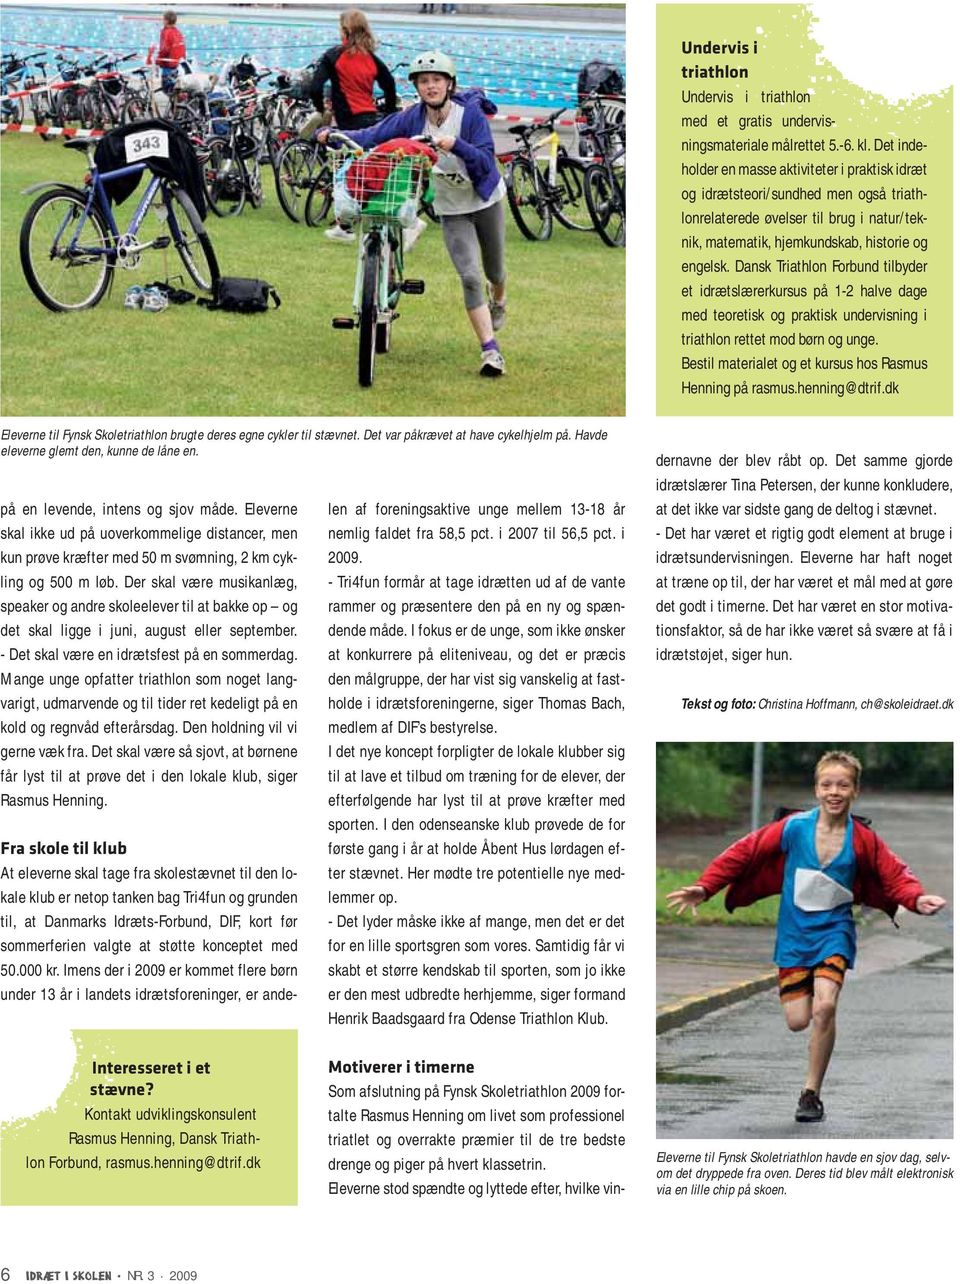 Dansk Triathlon Forbund tilbyder et idrætslærerkursus på 1-2 halve dage med teoretisk og praktisk undervisning i triathlon rettet mod børn og unge.